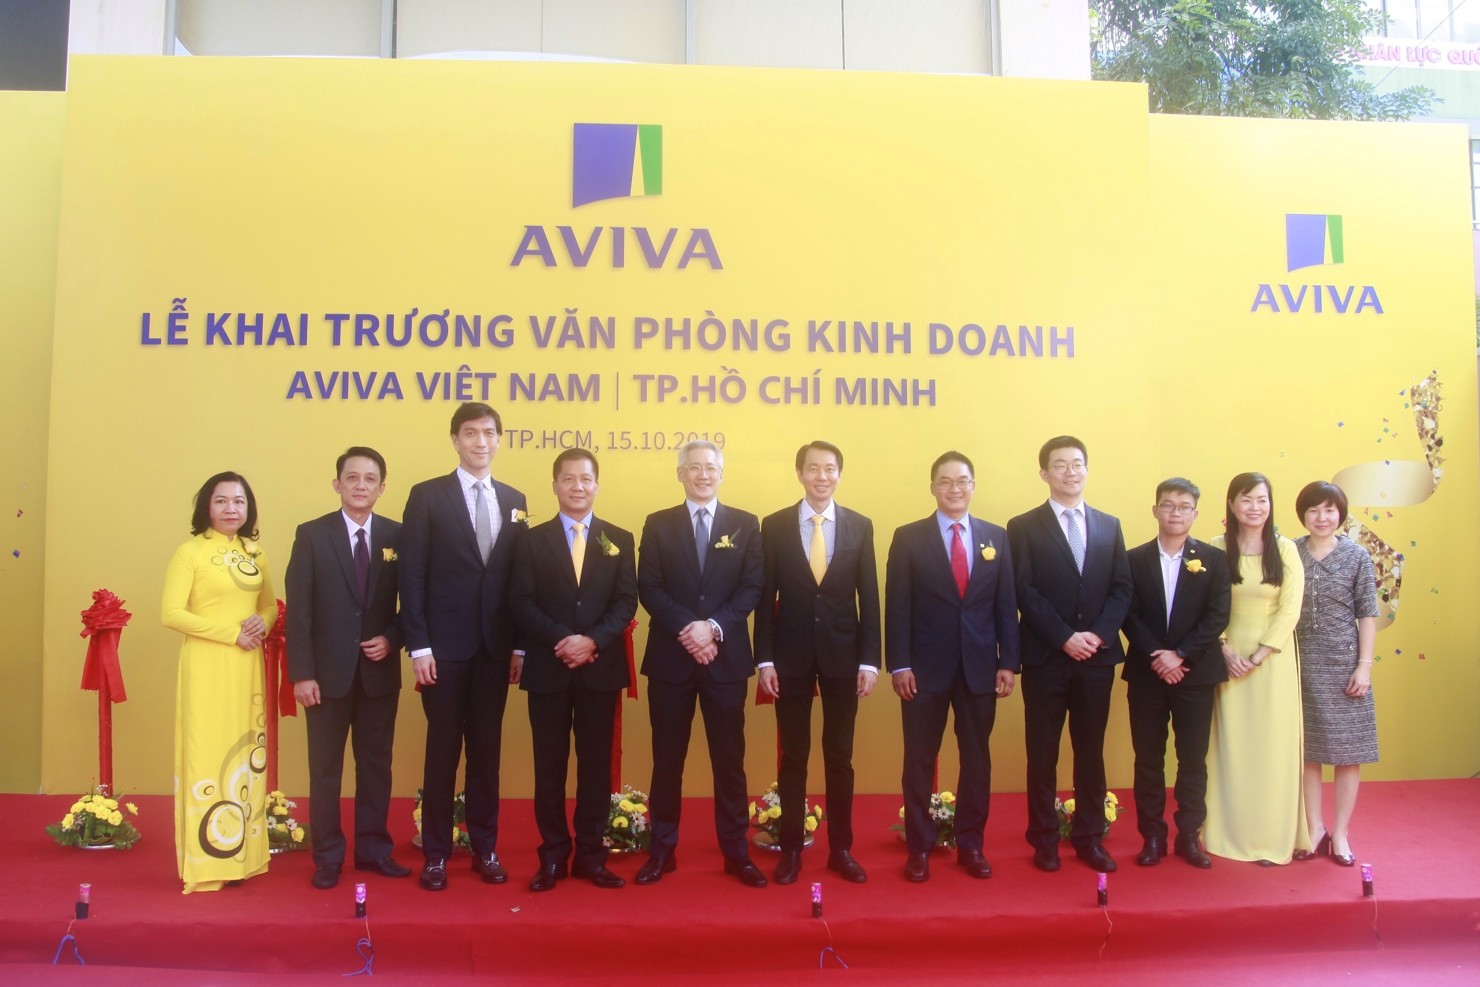 Aviva Việt Nam đang không ngừng đầu tư vào công nghệ và phát triển hệ thống văn phòng kinh doanh nhằm thực hiện tốt sứ mệnh mang đến bình an cho khách hàng.